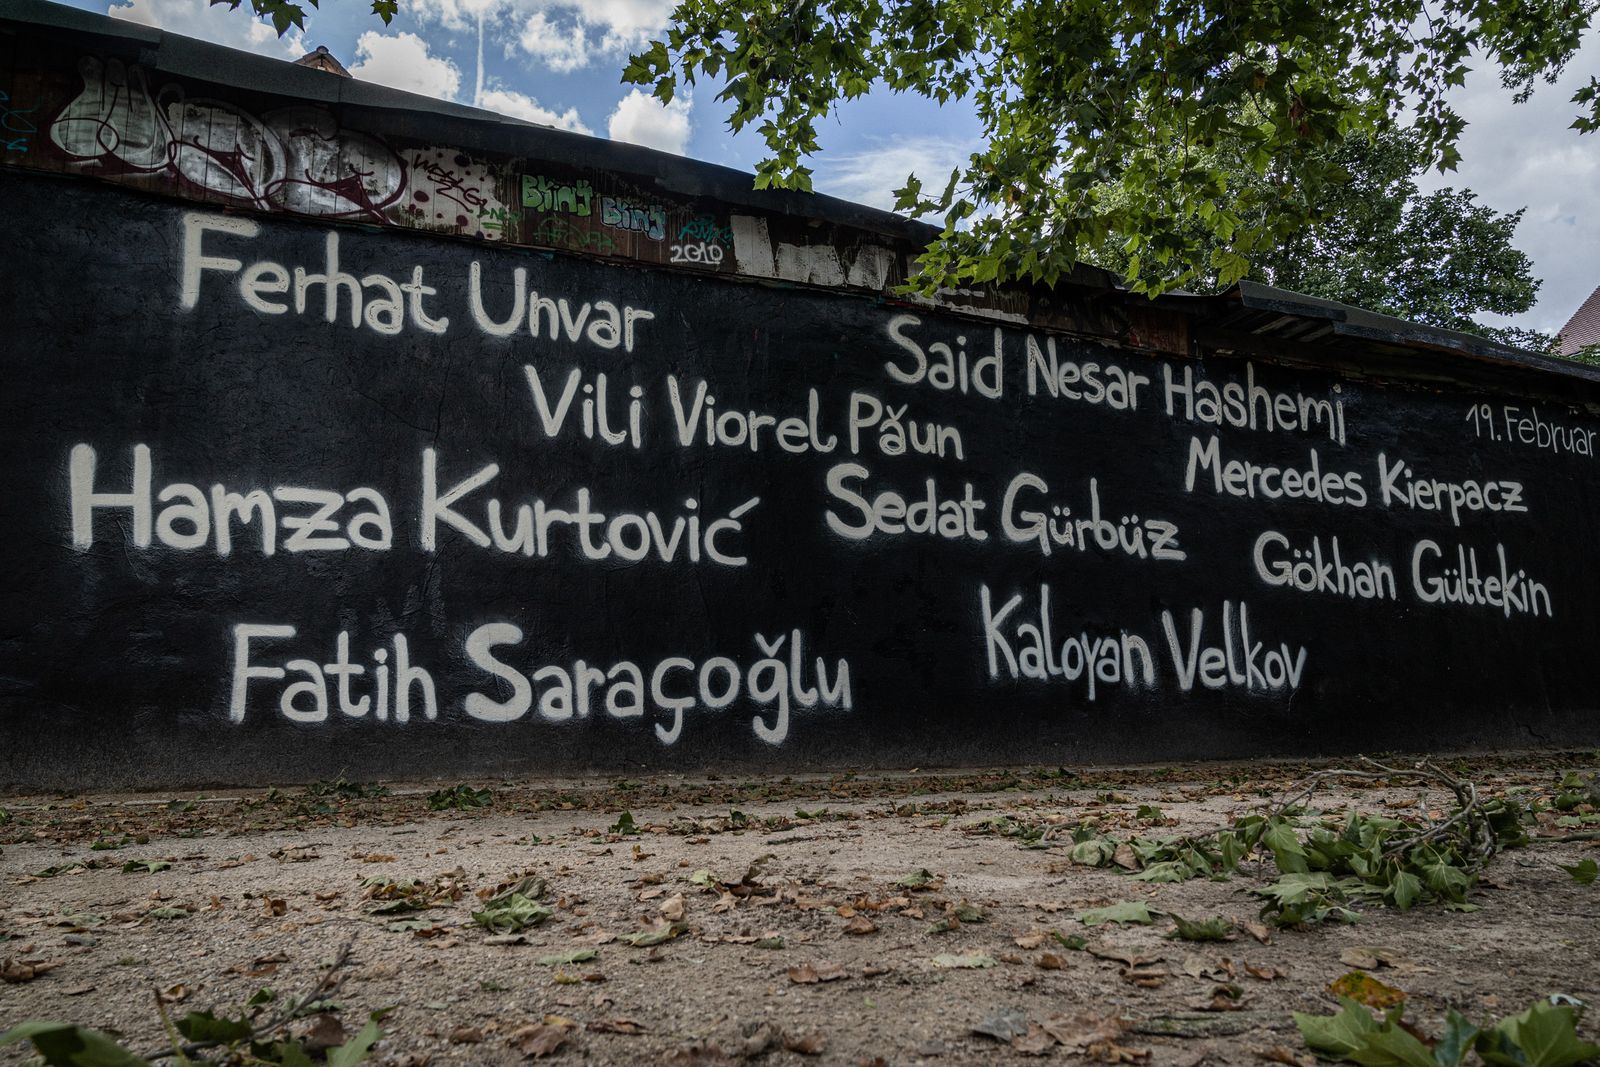 sliderimage-Graffiti mit allen Namen der Opfer als Erinnerung an den rassistischen Anschlag vom 19.02.20